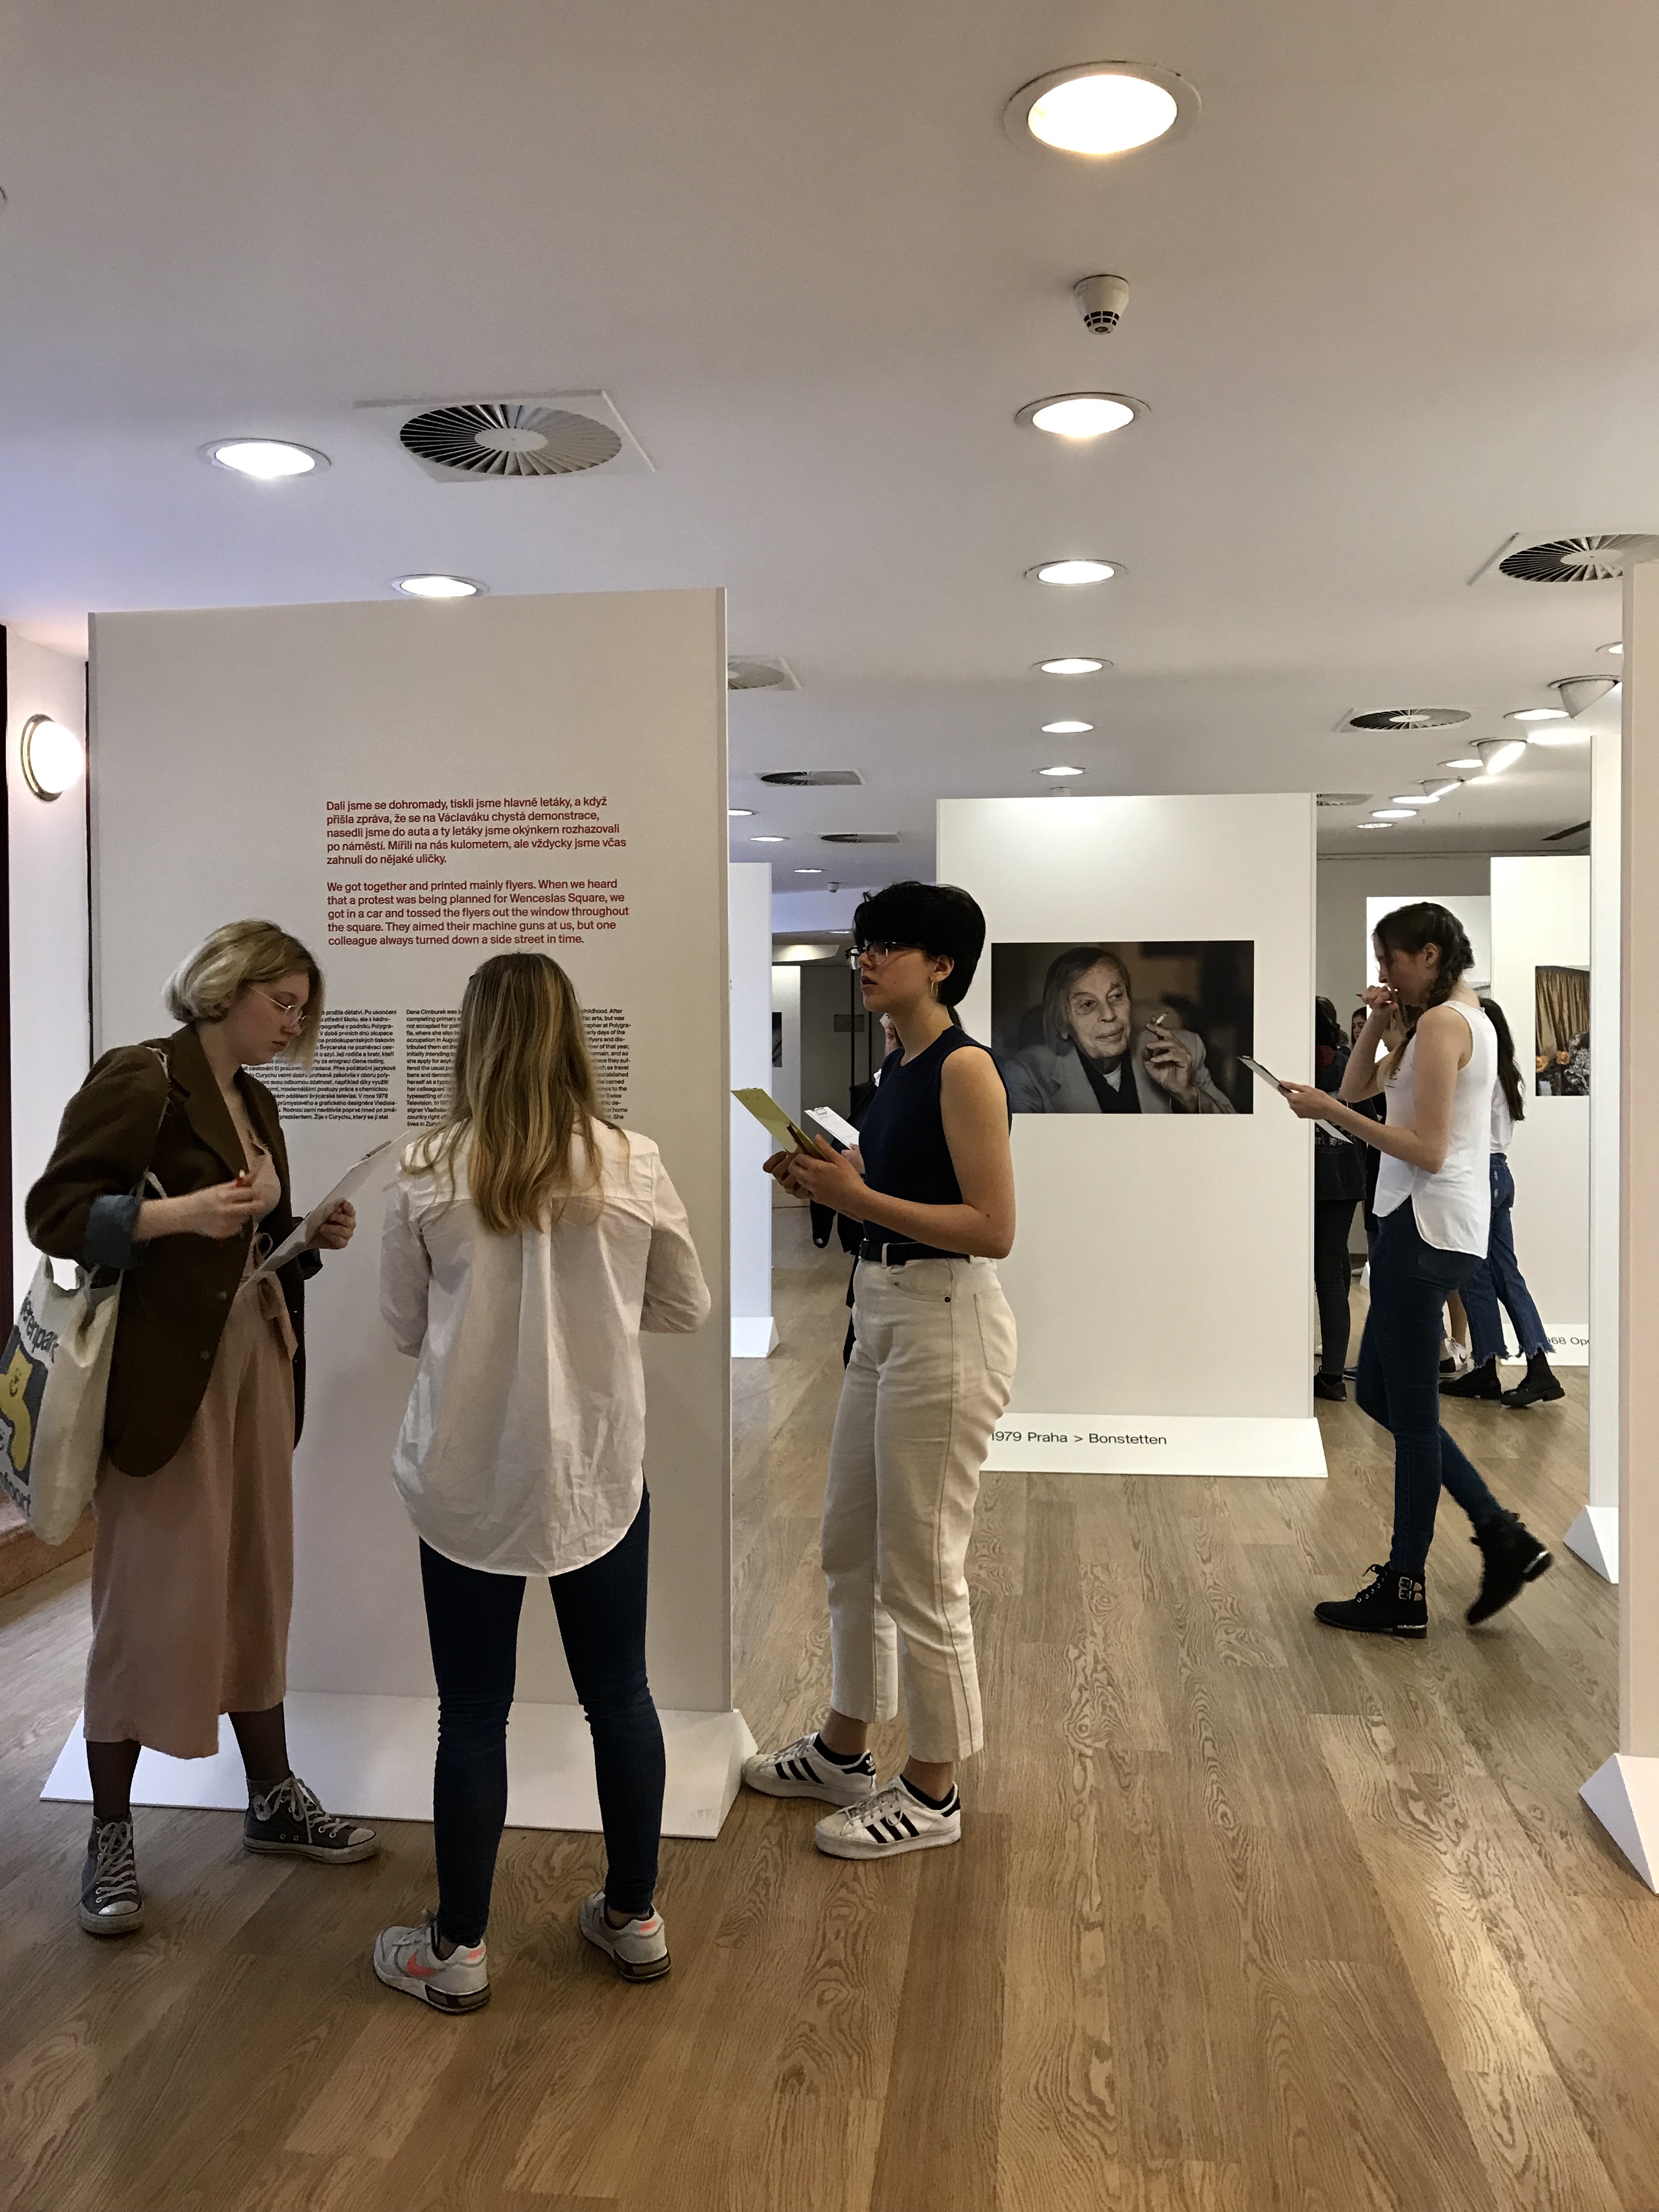 Am 12.04. 2018 haben die Ausstellung 58 Schüler des Englisch-tschechischen Gymnasiums Amazon besucht. Sie haben mit den Mitarbeitern der Botschaft das speziell für sie vorbereitete Programm zum Thema Heimat mitgemacht.